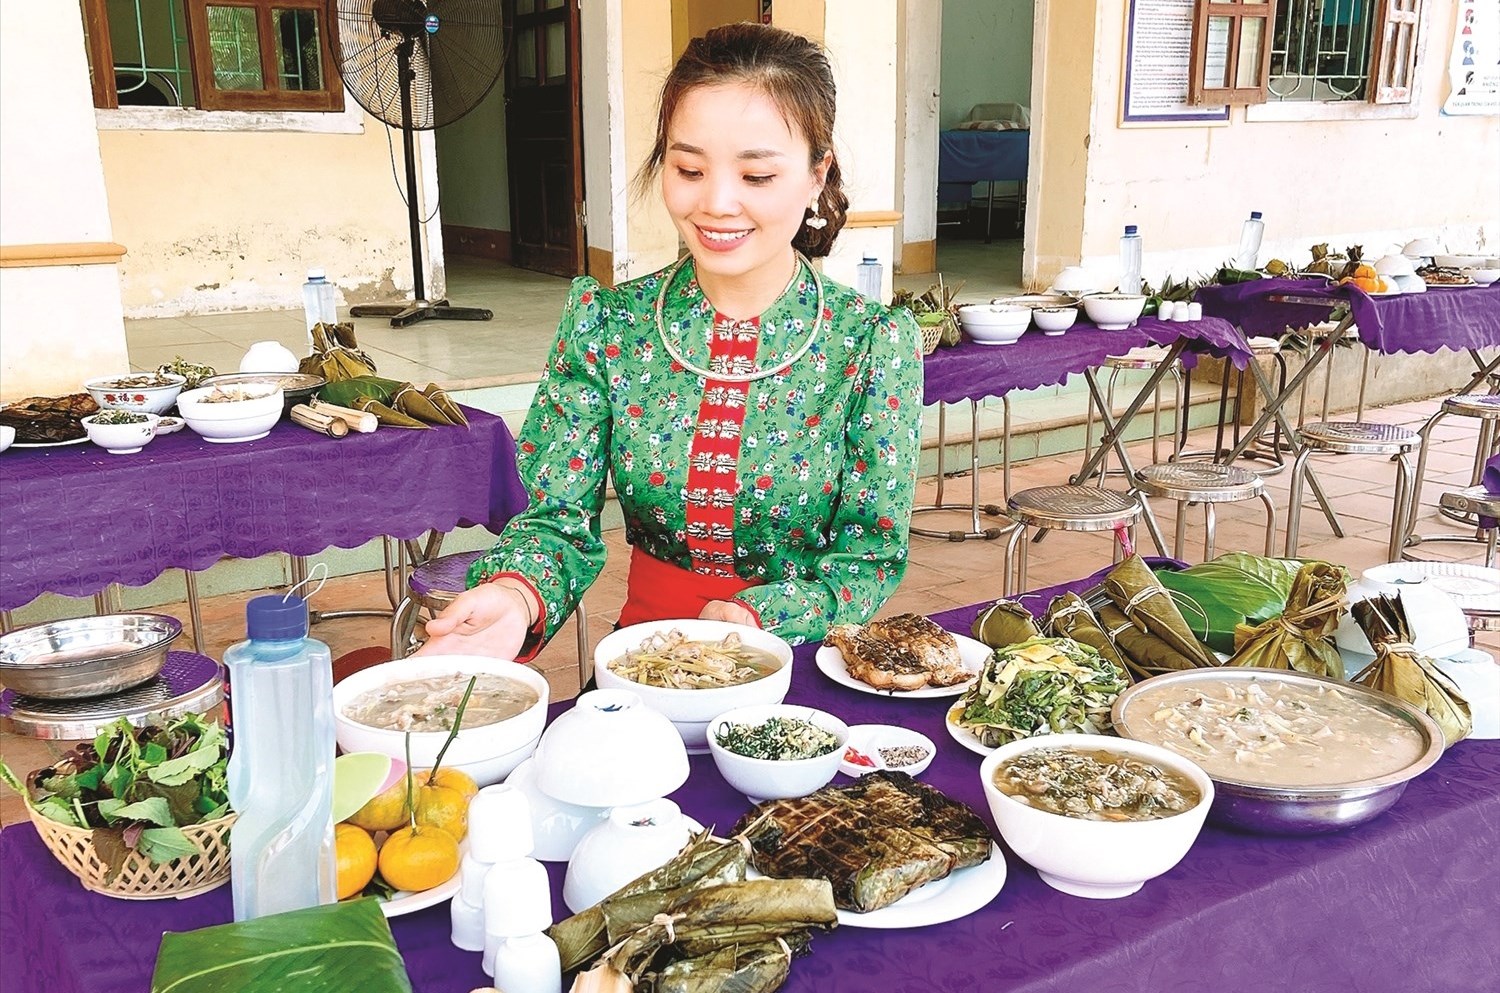 Dịp Tết Độc lập, người Thái thường tụ họp để ăn uống, vui hội cồng chiêng, khắc luống.